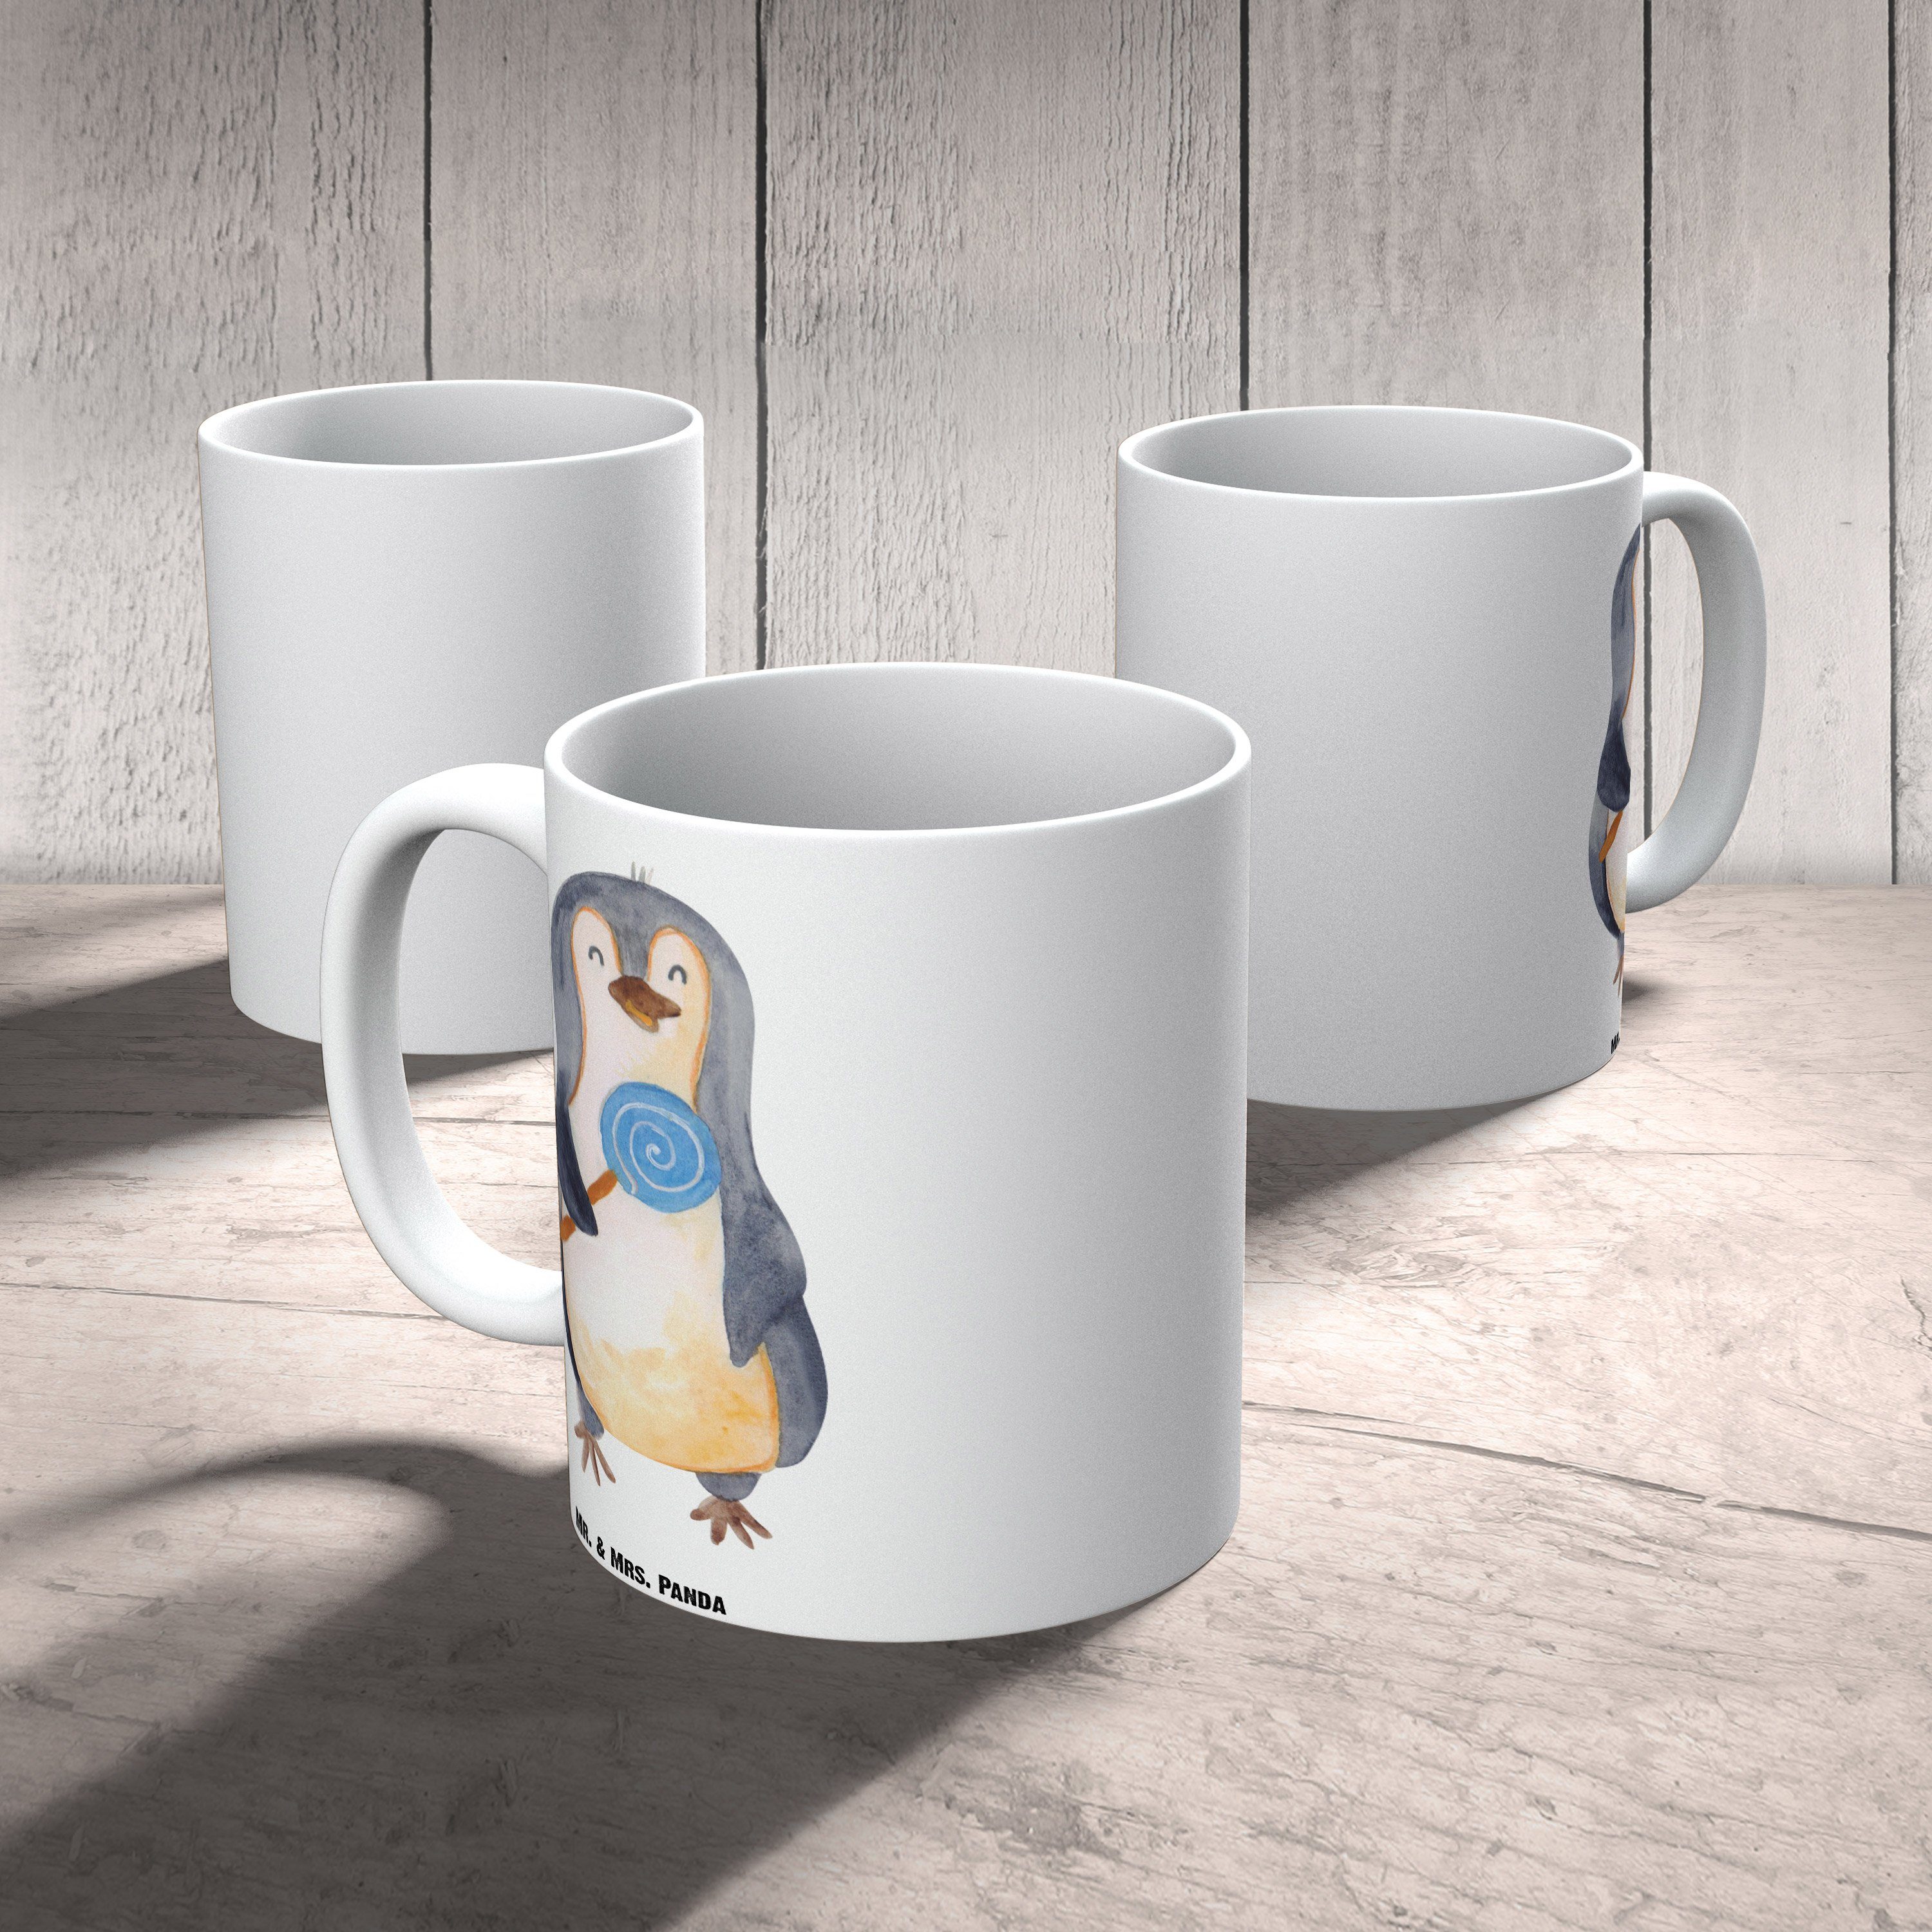 Weiß Pinguin Mrs. Panda Mr. - Tasse XL & Tasse, Tasse XL XL Geschenk, spülmaschinenfest, Keramik Teet, Lolli -